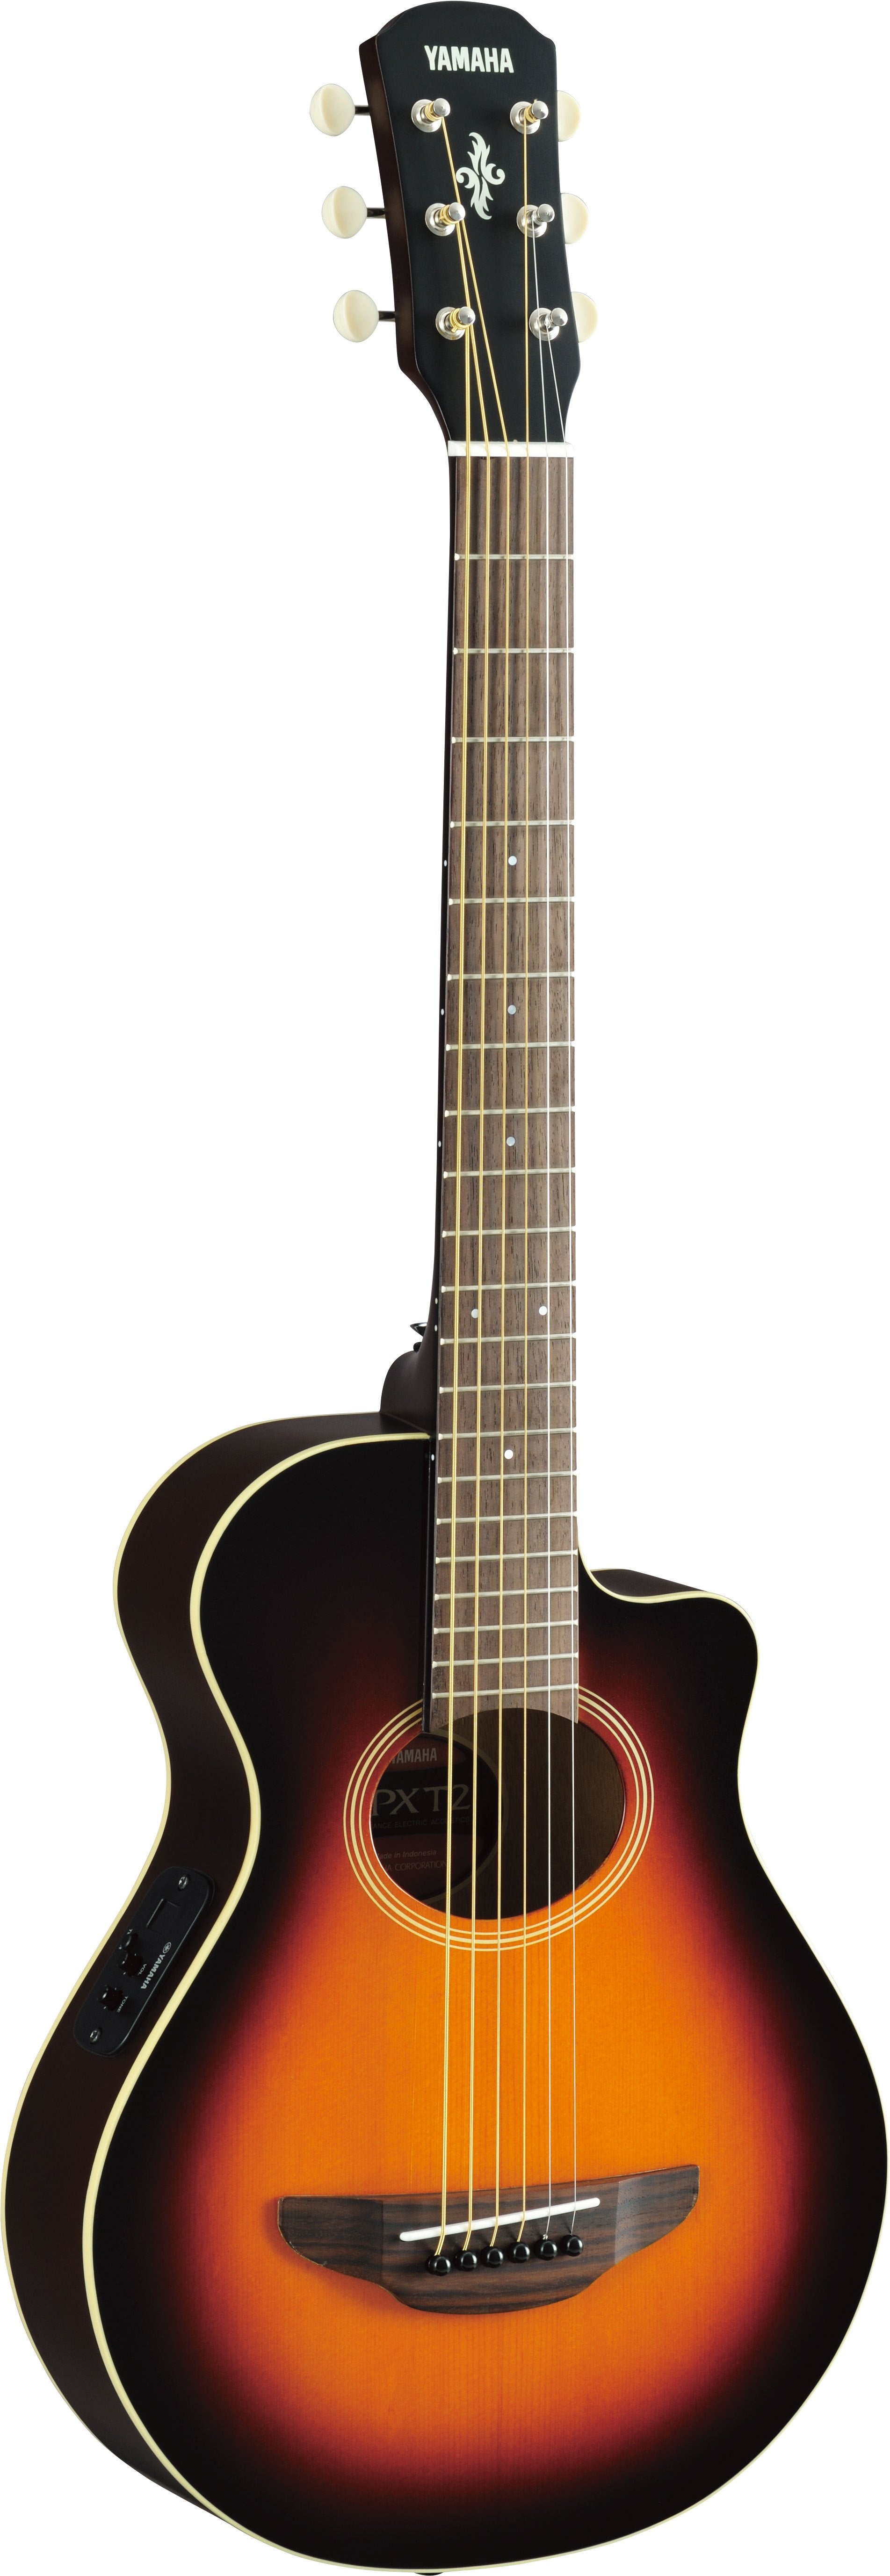 Yamaha APXT2 3/4 size acoustic-electric guitar (Old Violin Sunburst) 電木結他